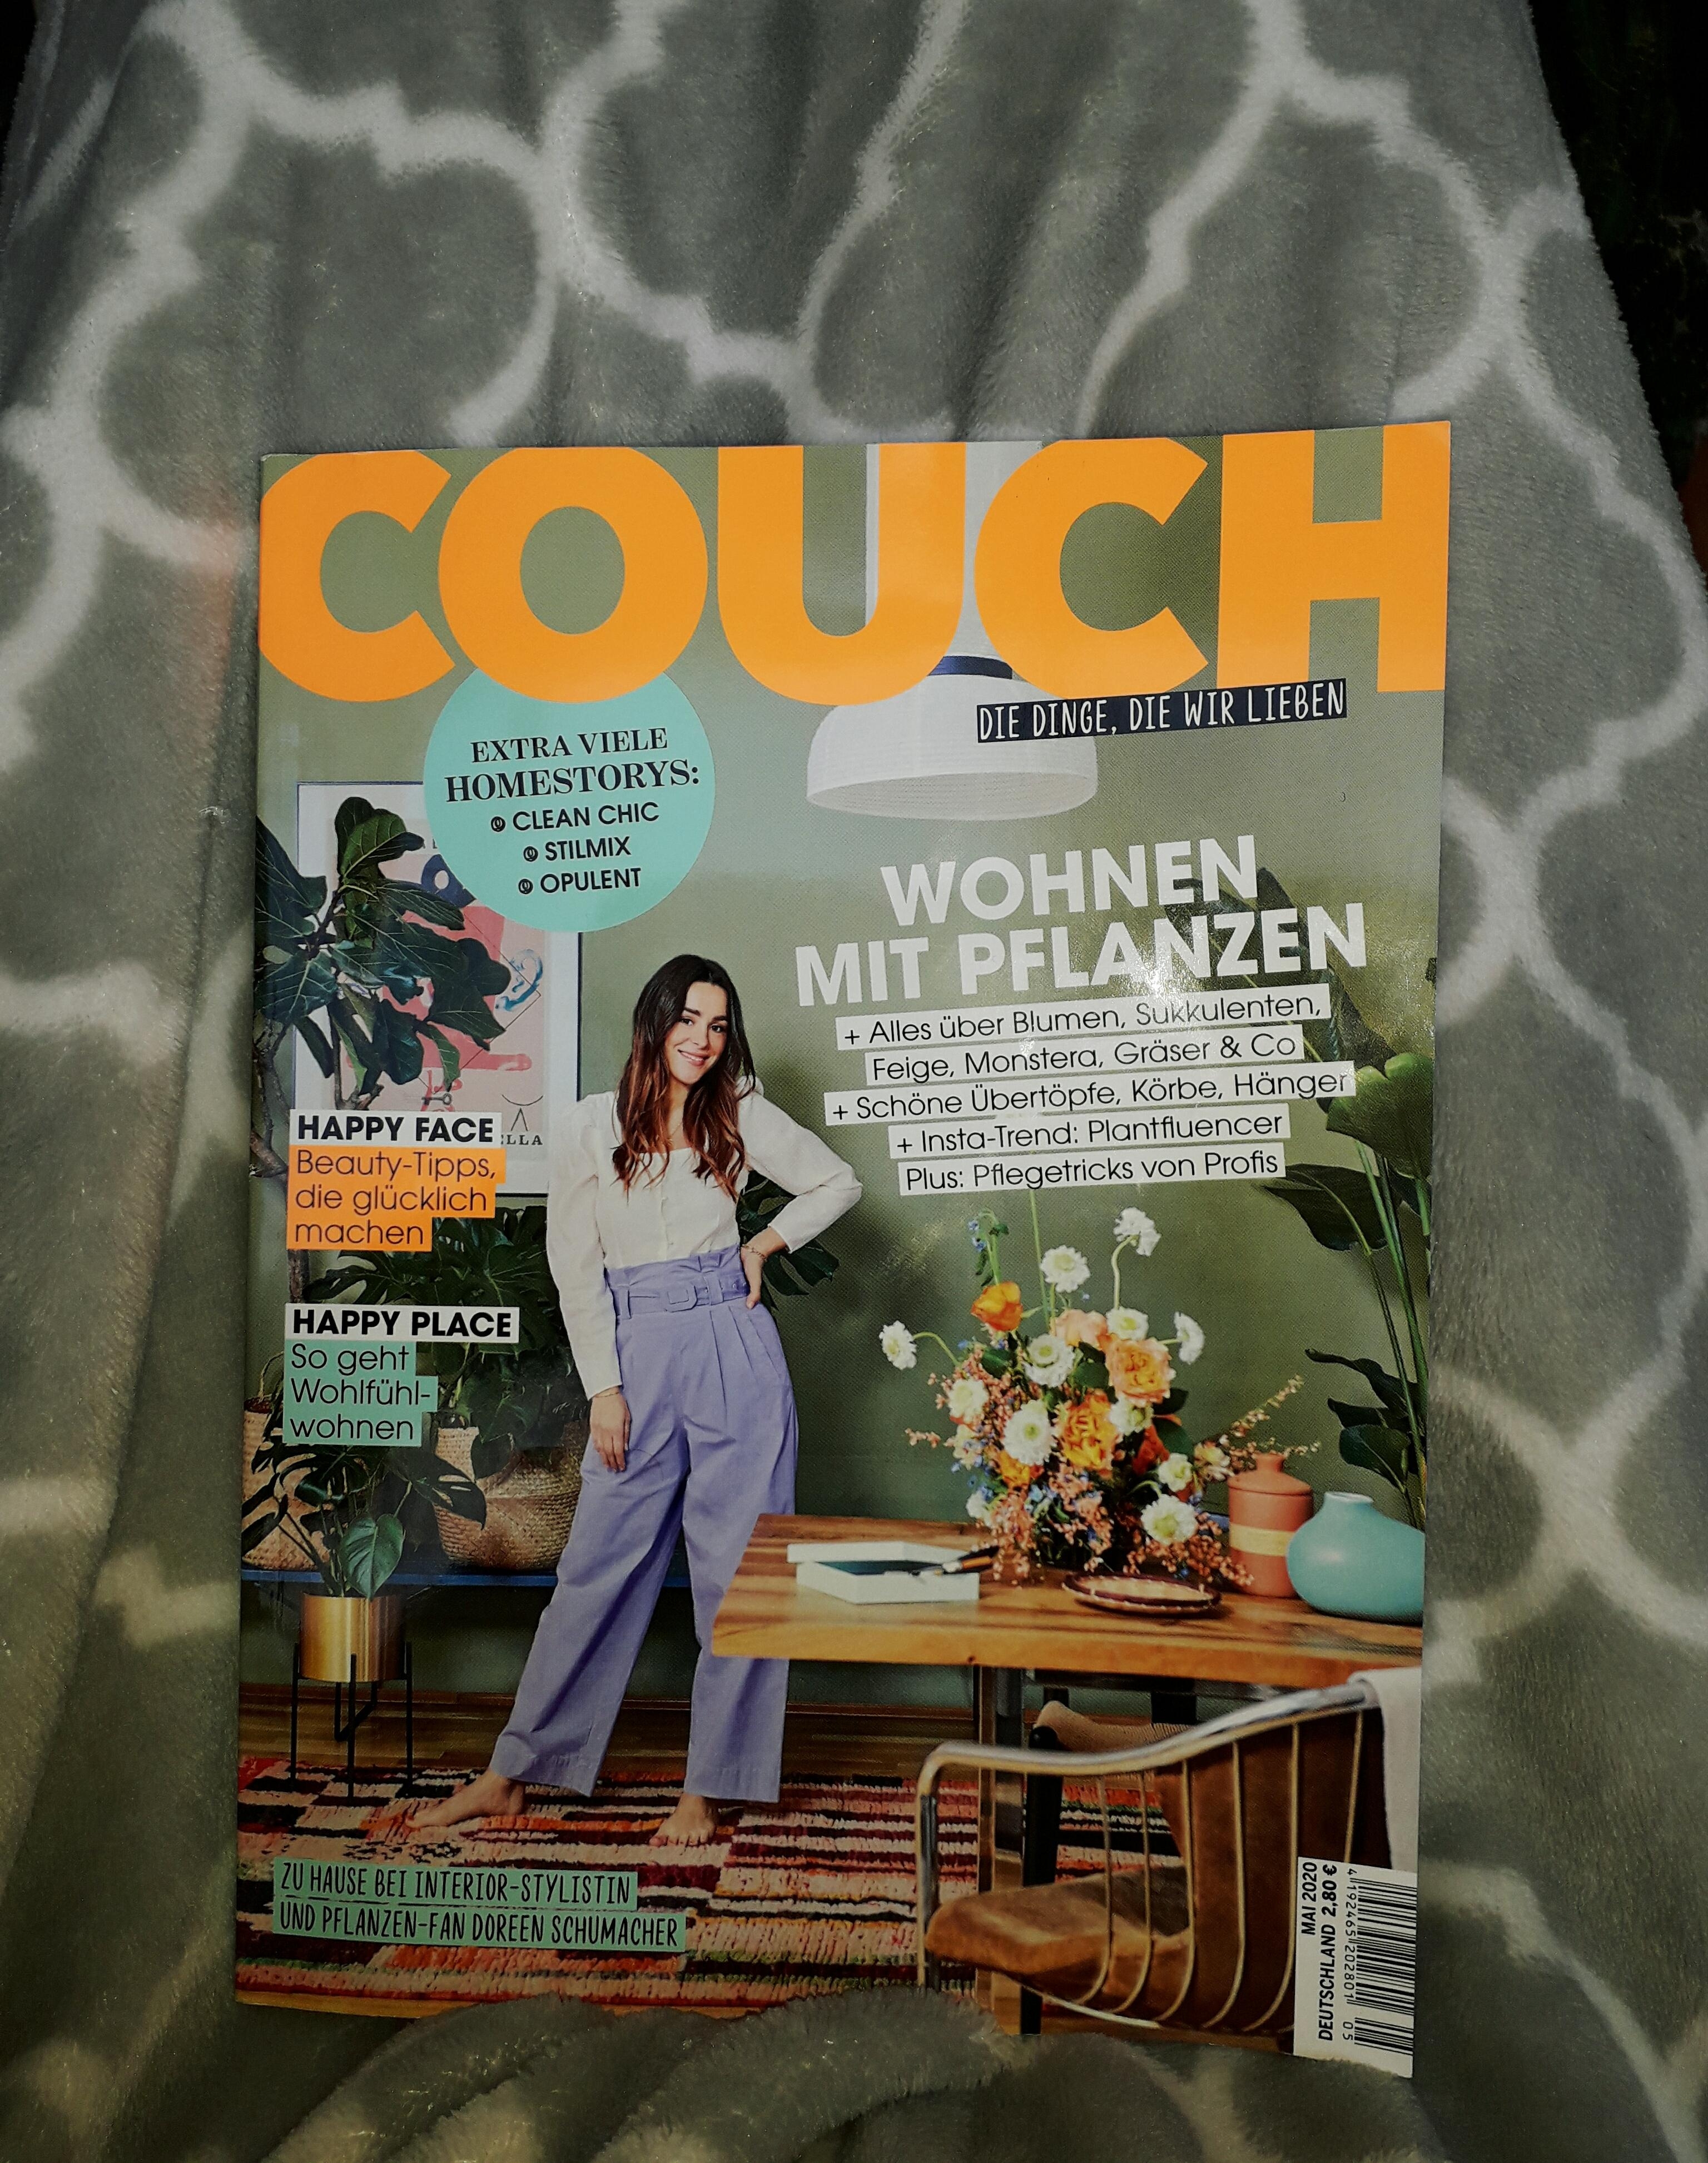 #couch #magazin #heft #gewinn #quarantäne
Vielen, herzlichen Dank, liebe Couch-Redaktion 💕